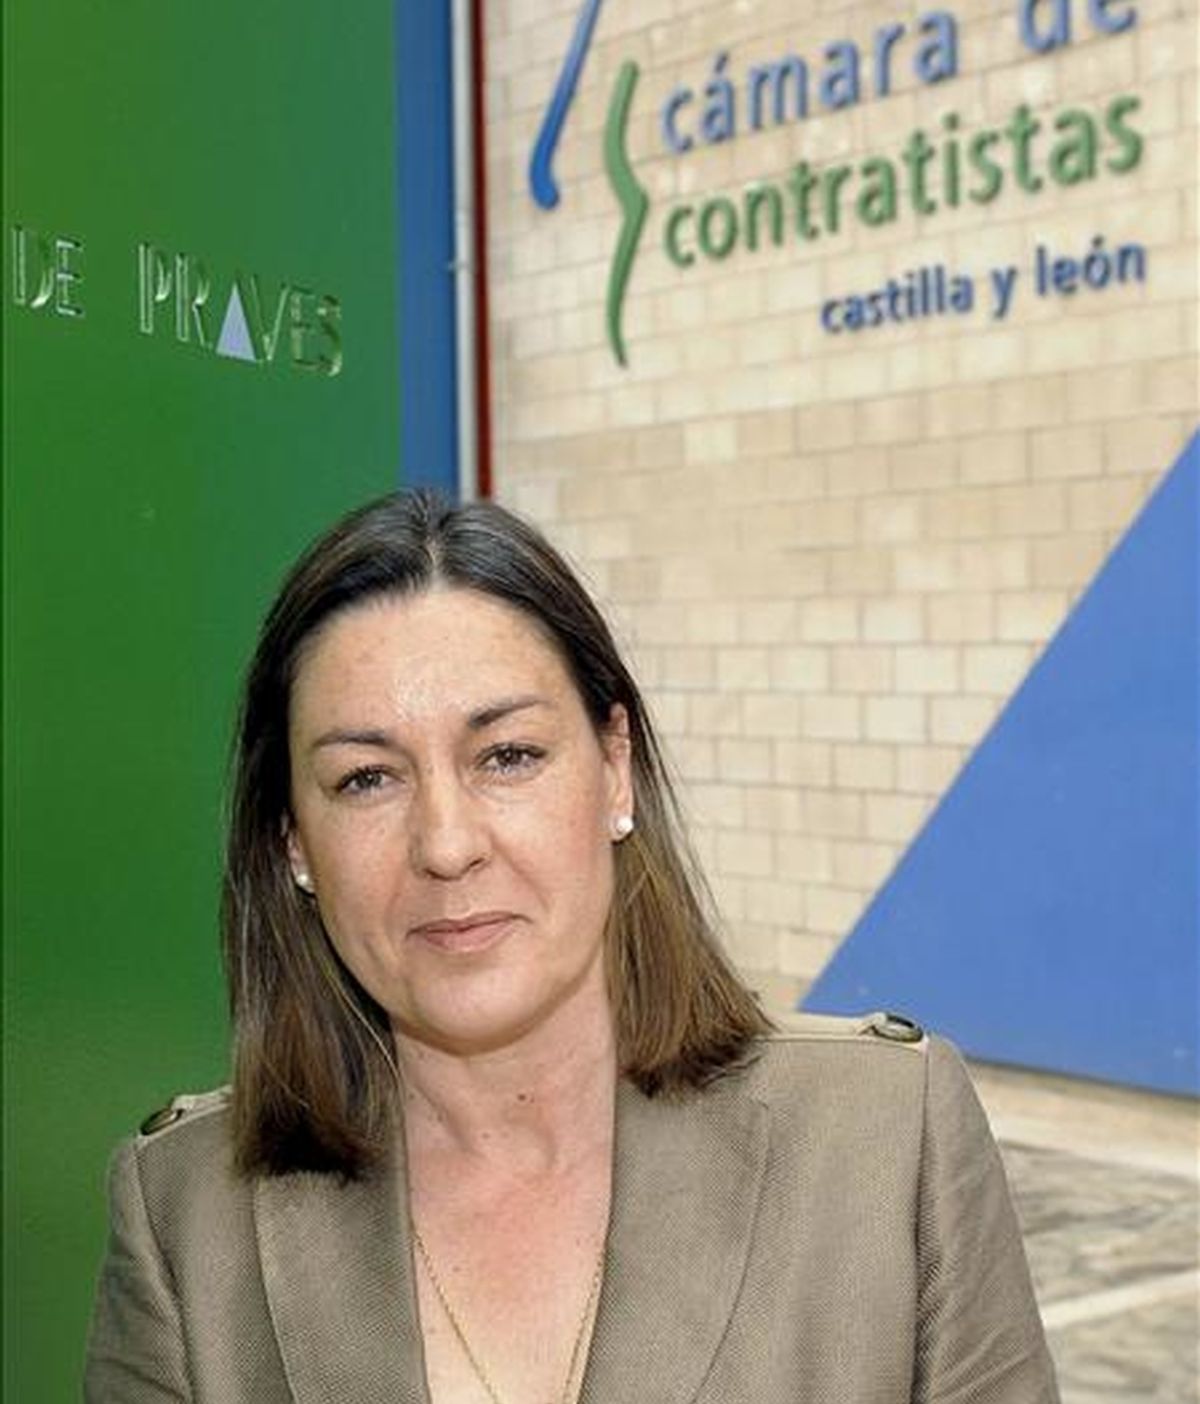 La presidenta de la Cámara de Contratistas de Castilla y León, Isabel de Blas, durante la entrevista con EFE, en la que ha asegurado que "el empleo se va a mantener" en 2009 en el sector de la obra pública en la Comunidad. EFE